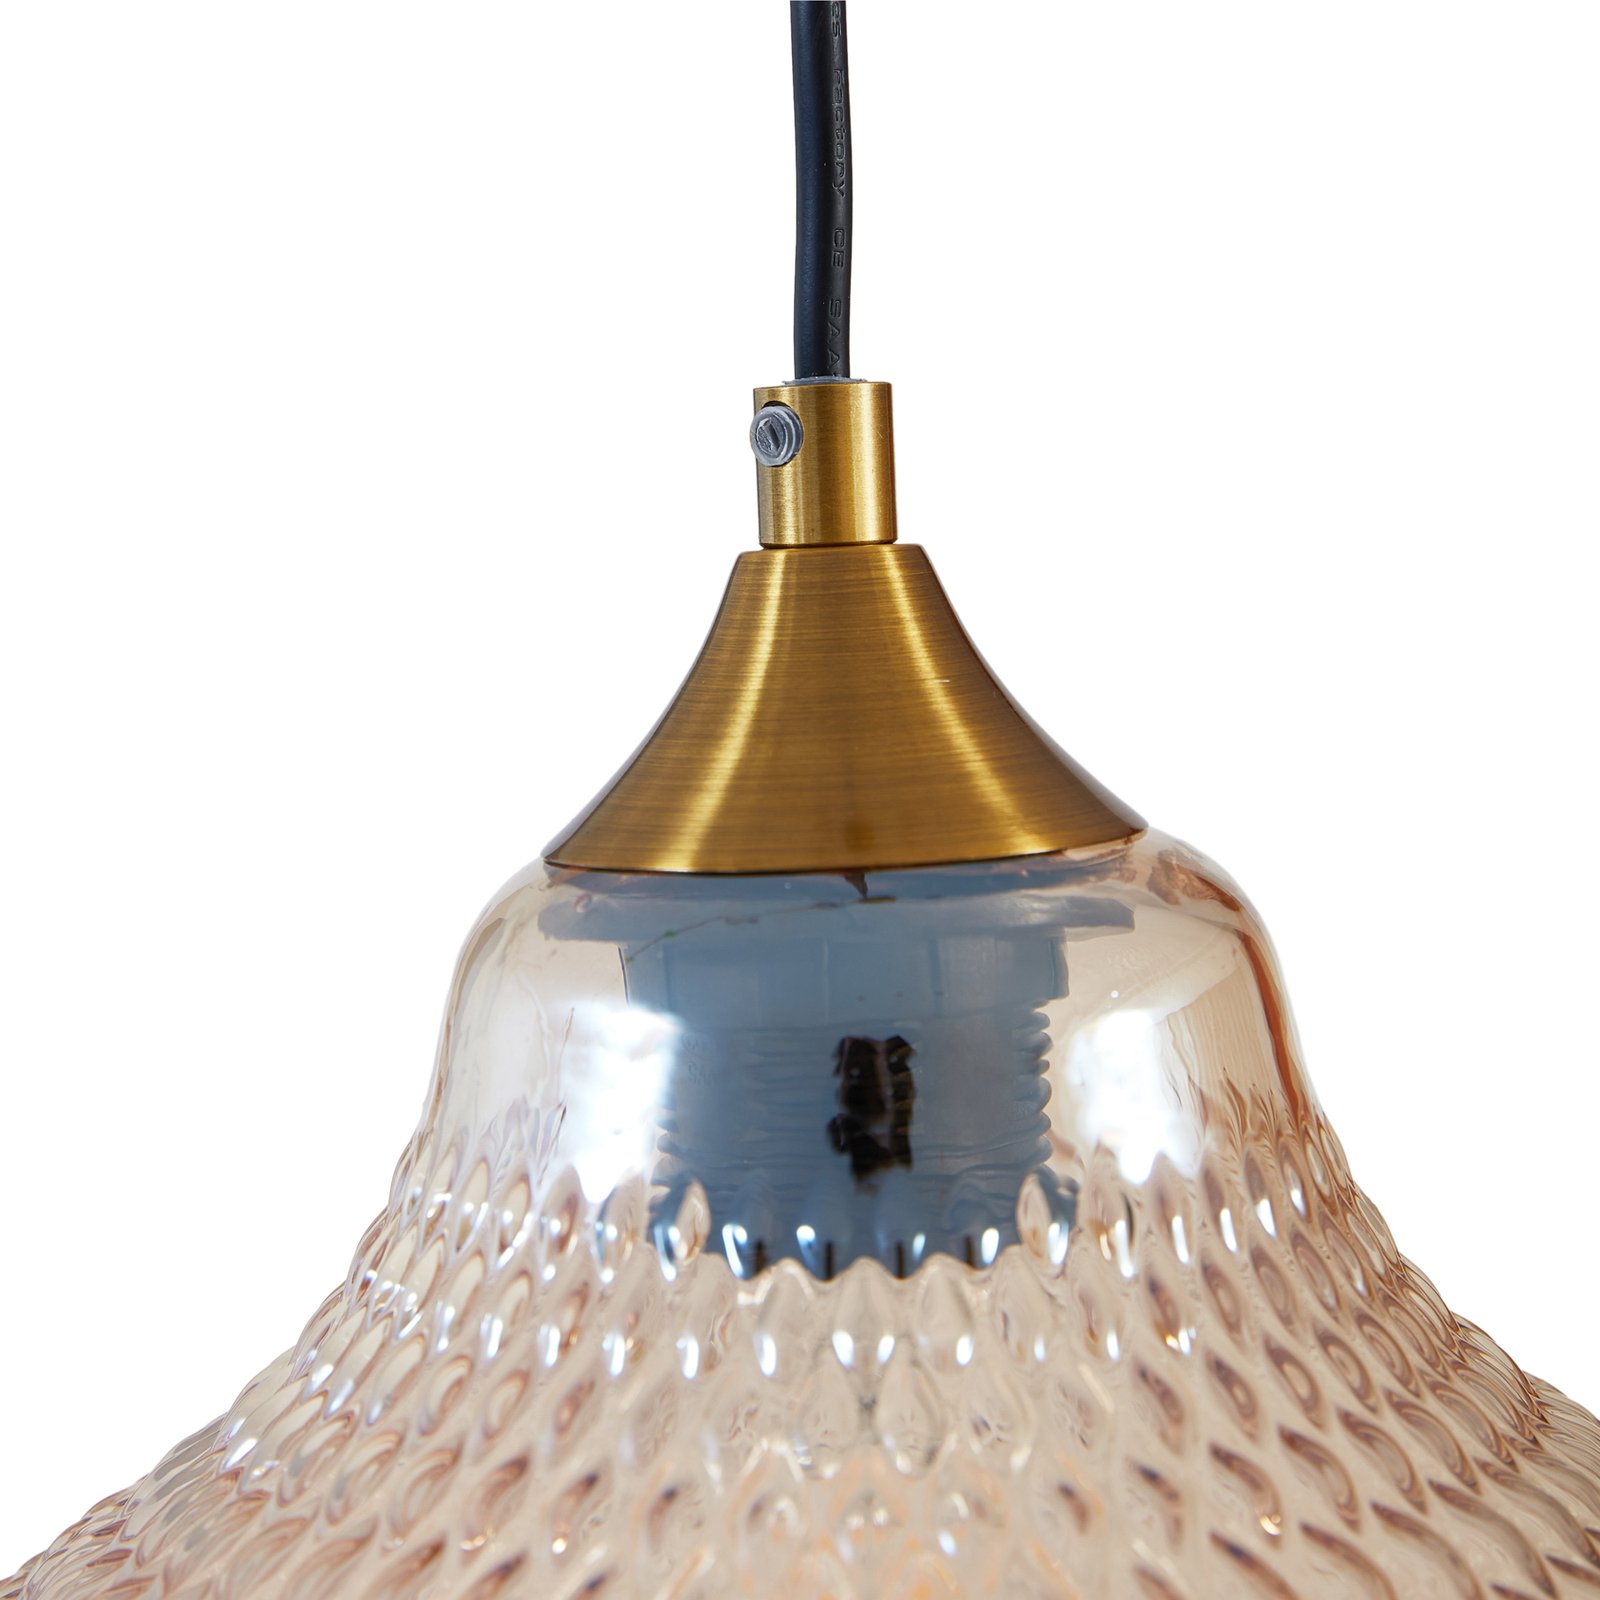 Висяща лампа Lindby Drakar, 1fl, кехлибар, Ø 22cm